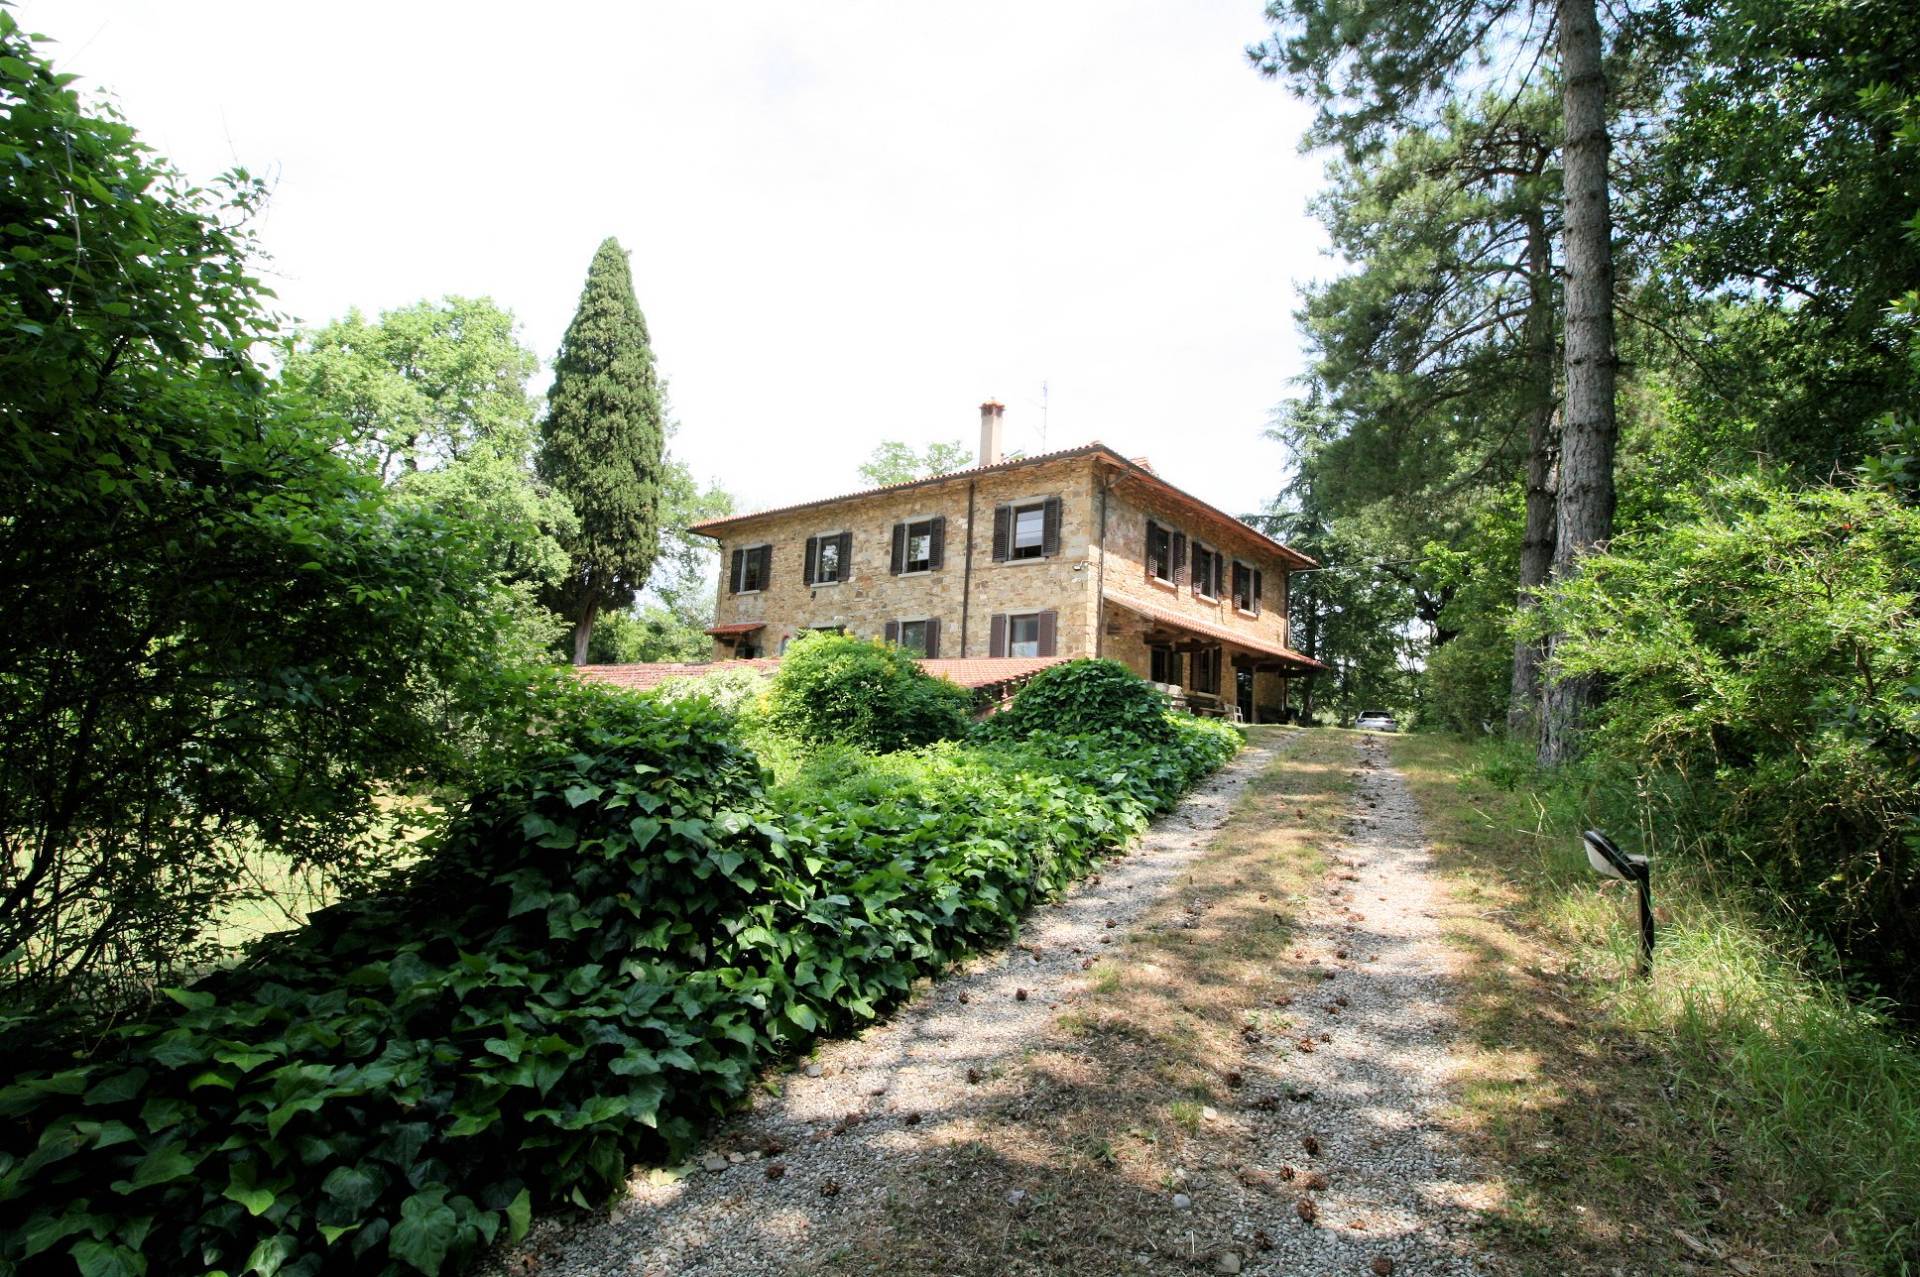 Rustico / Casale in vendita a Arezzo, 9 locali, prezzo € 480.000 | PortaleAgenzieImmobiliari.it